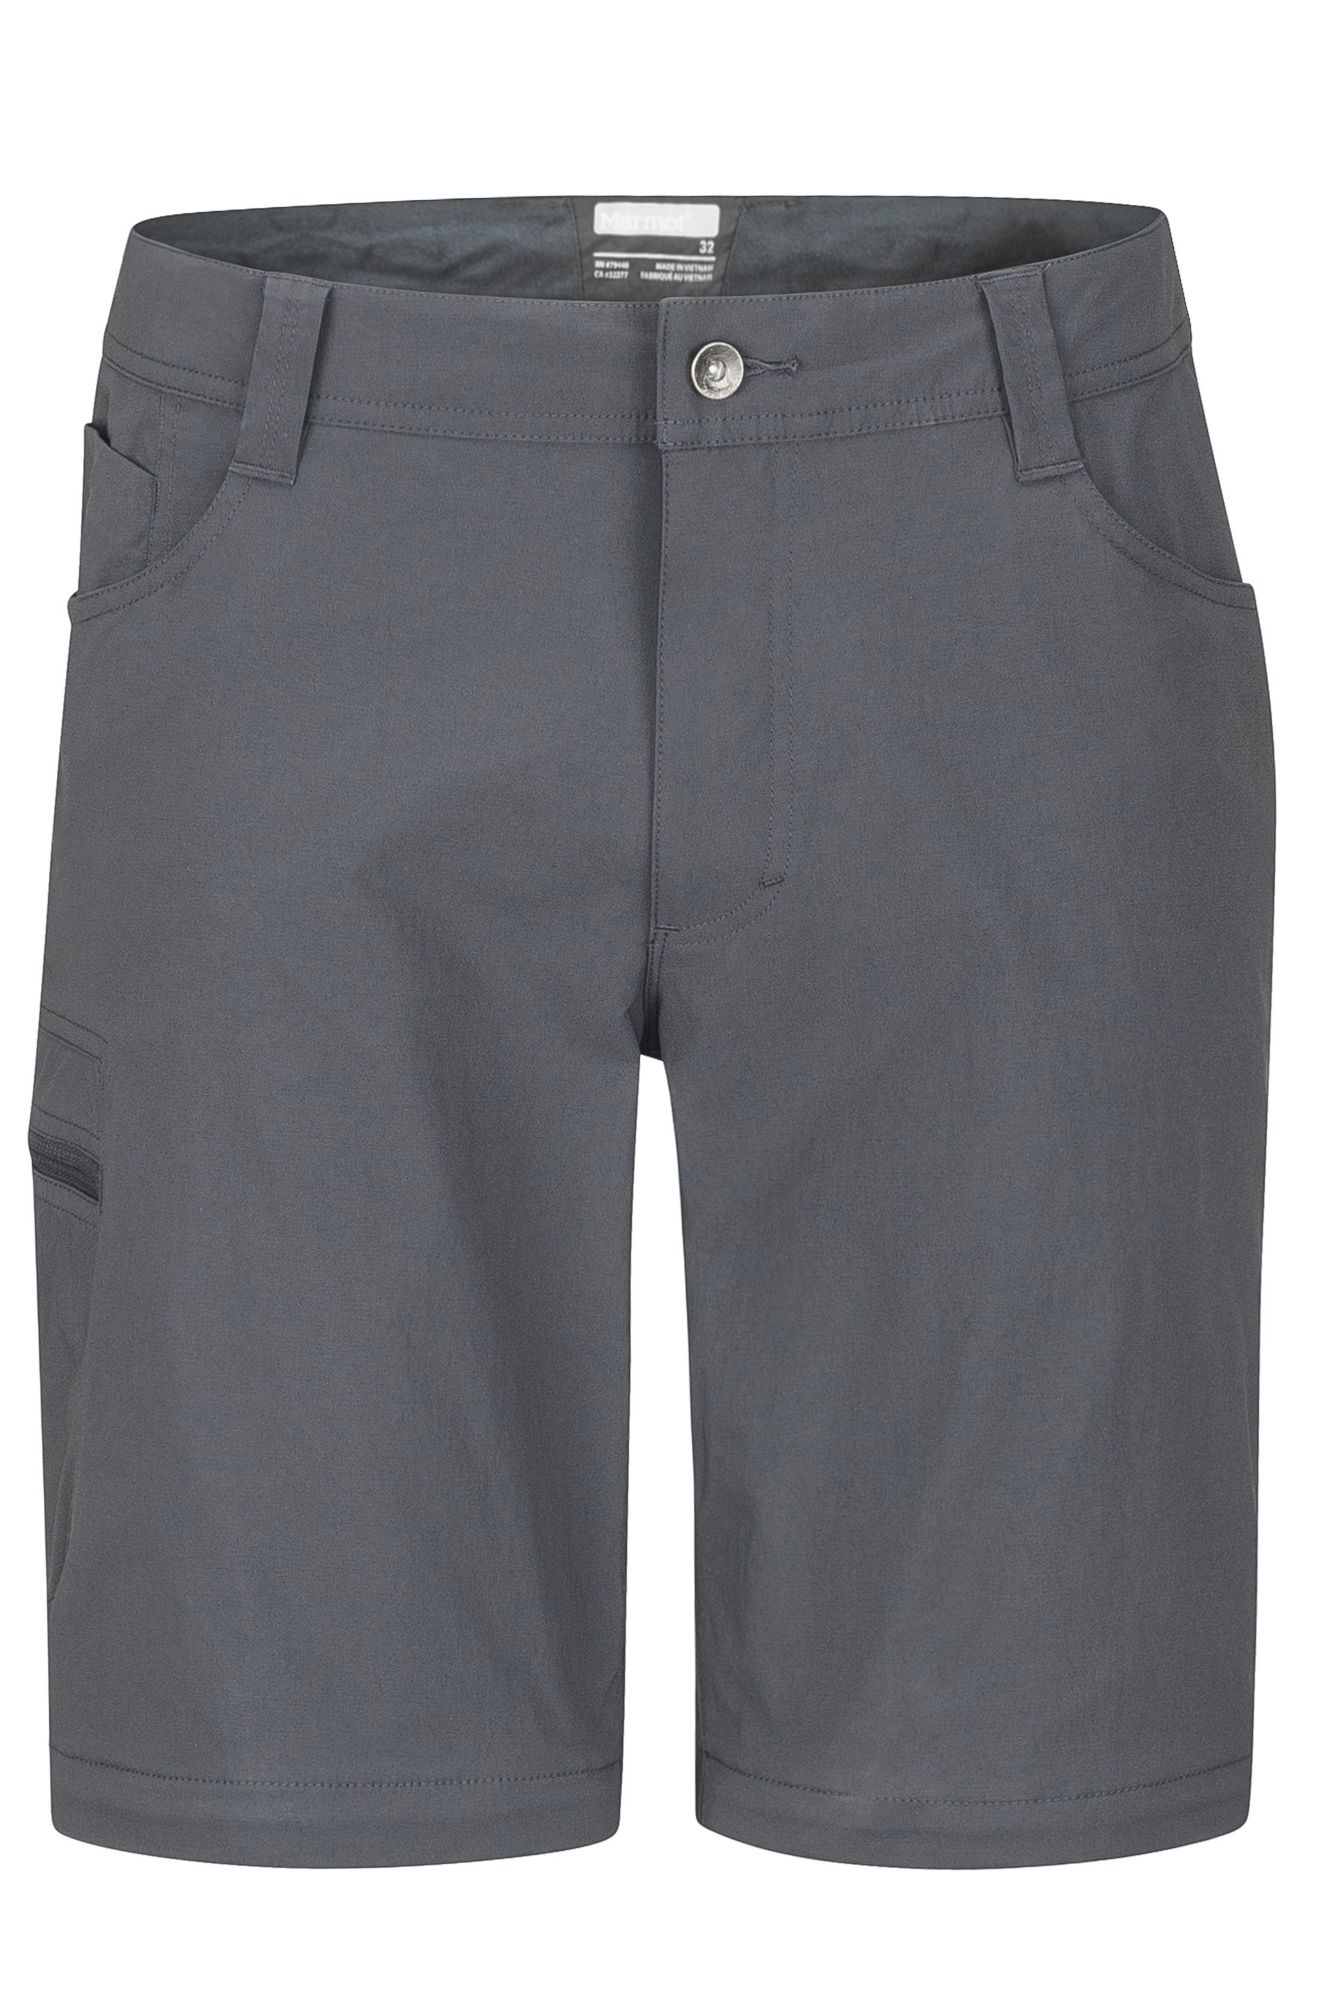 Men's Transcend Convertible Pants - Short